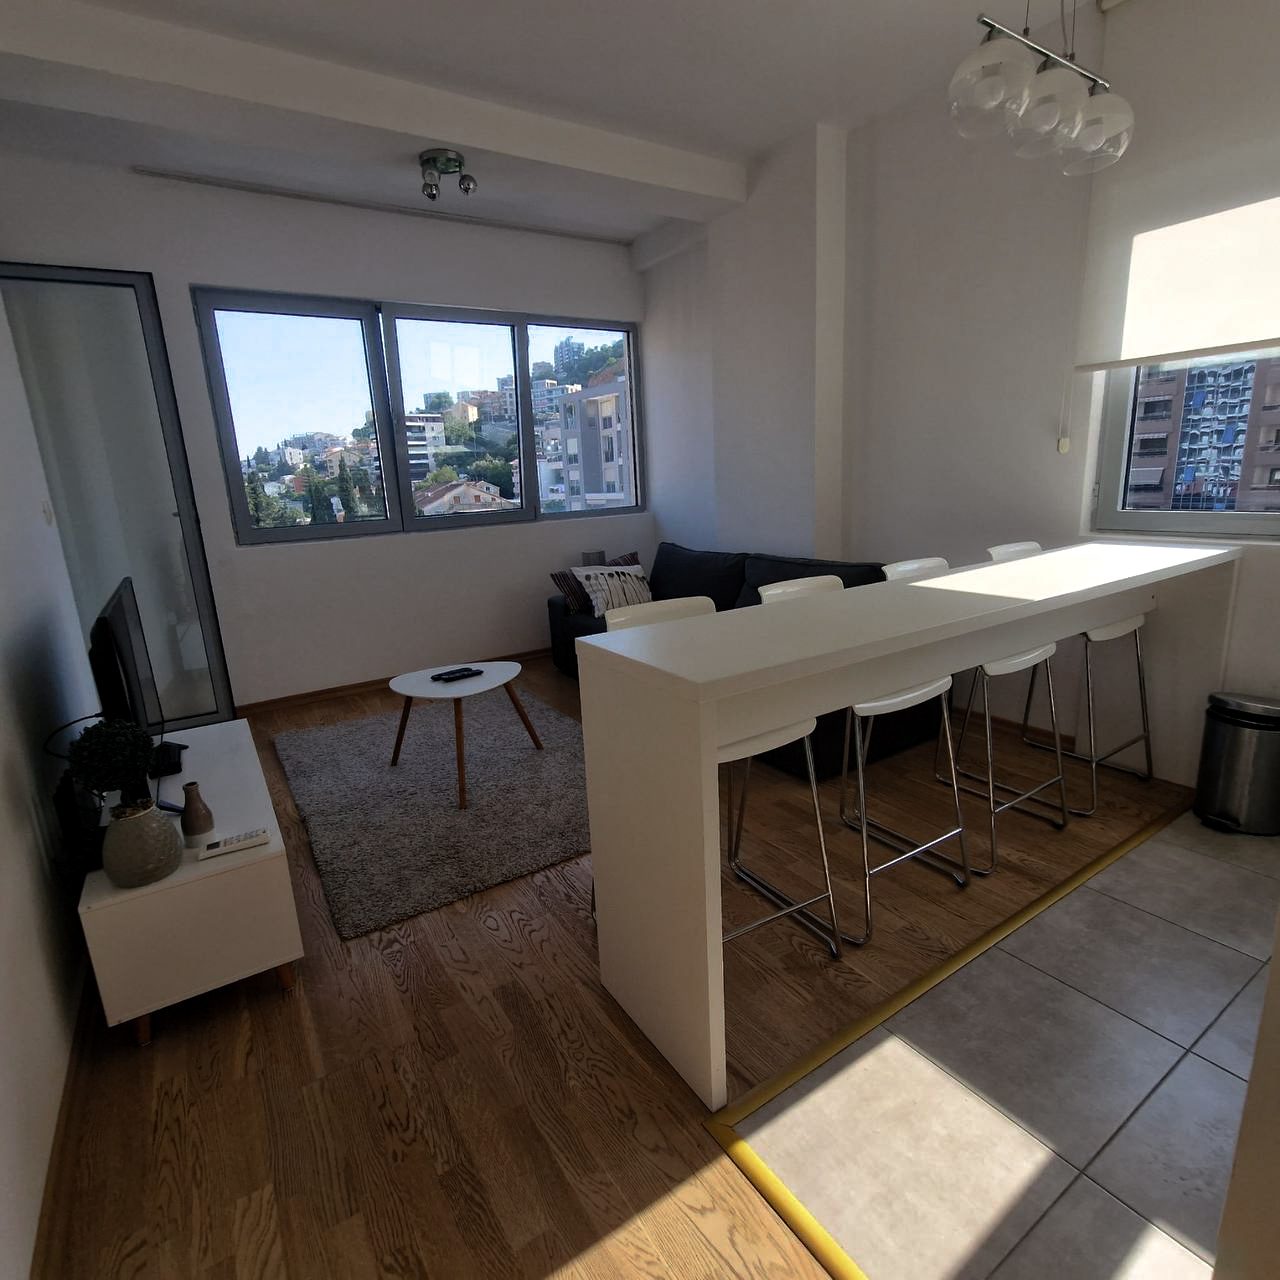 Купить двухкомнатную квартиру в Будве: общая комната, боковой вид